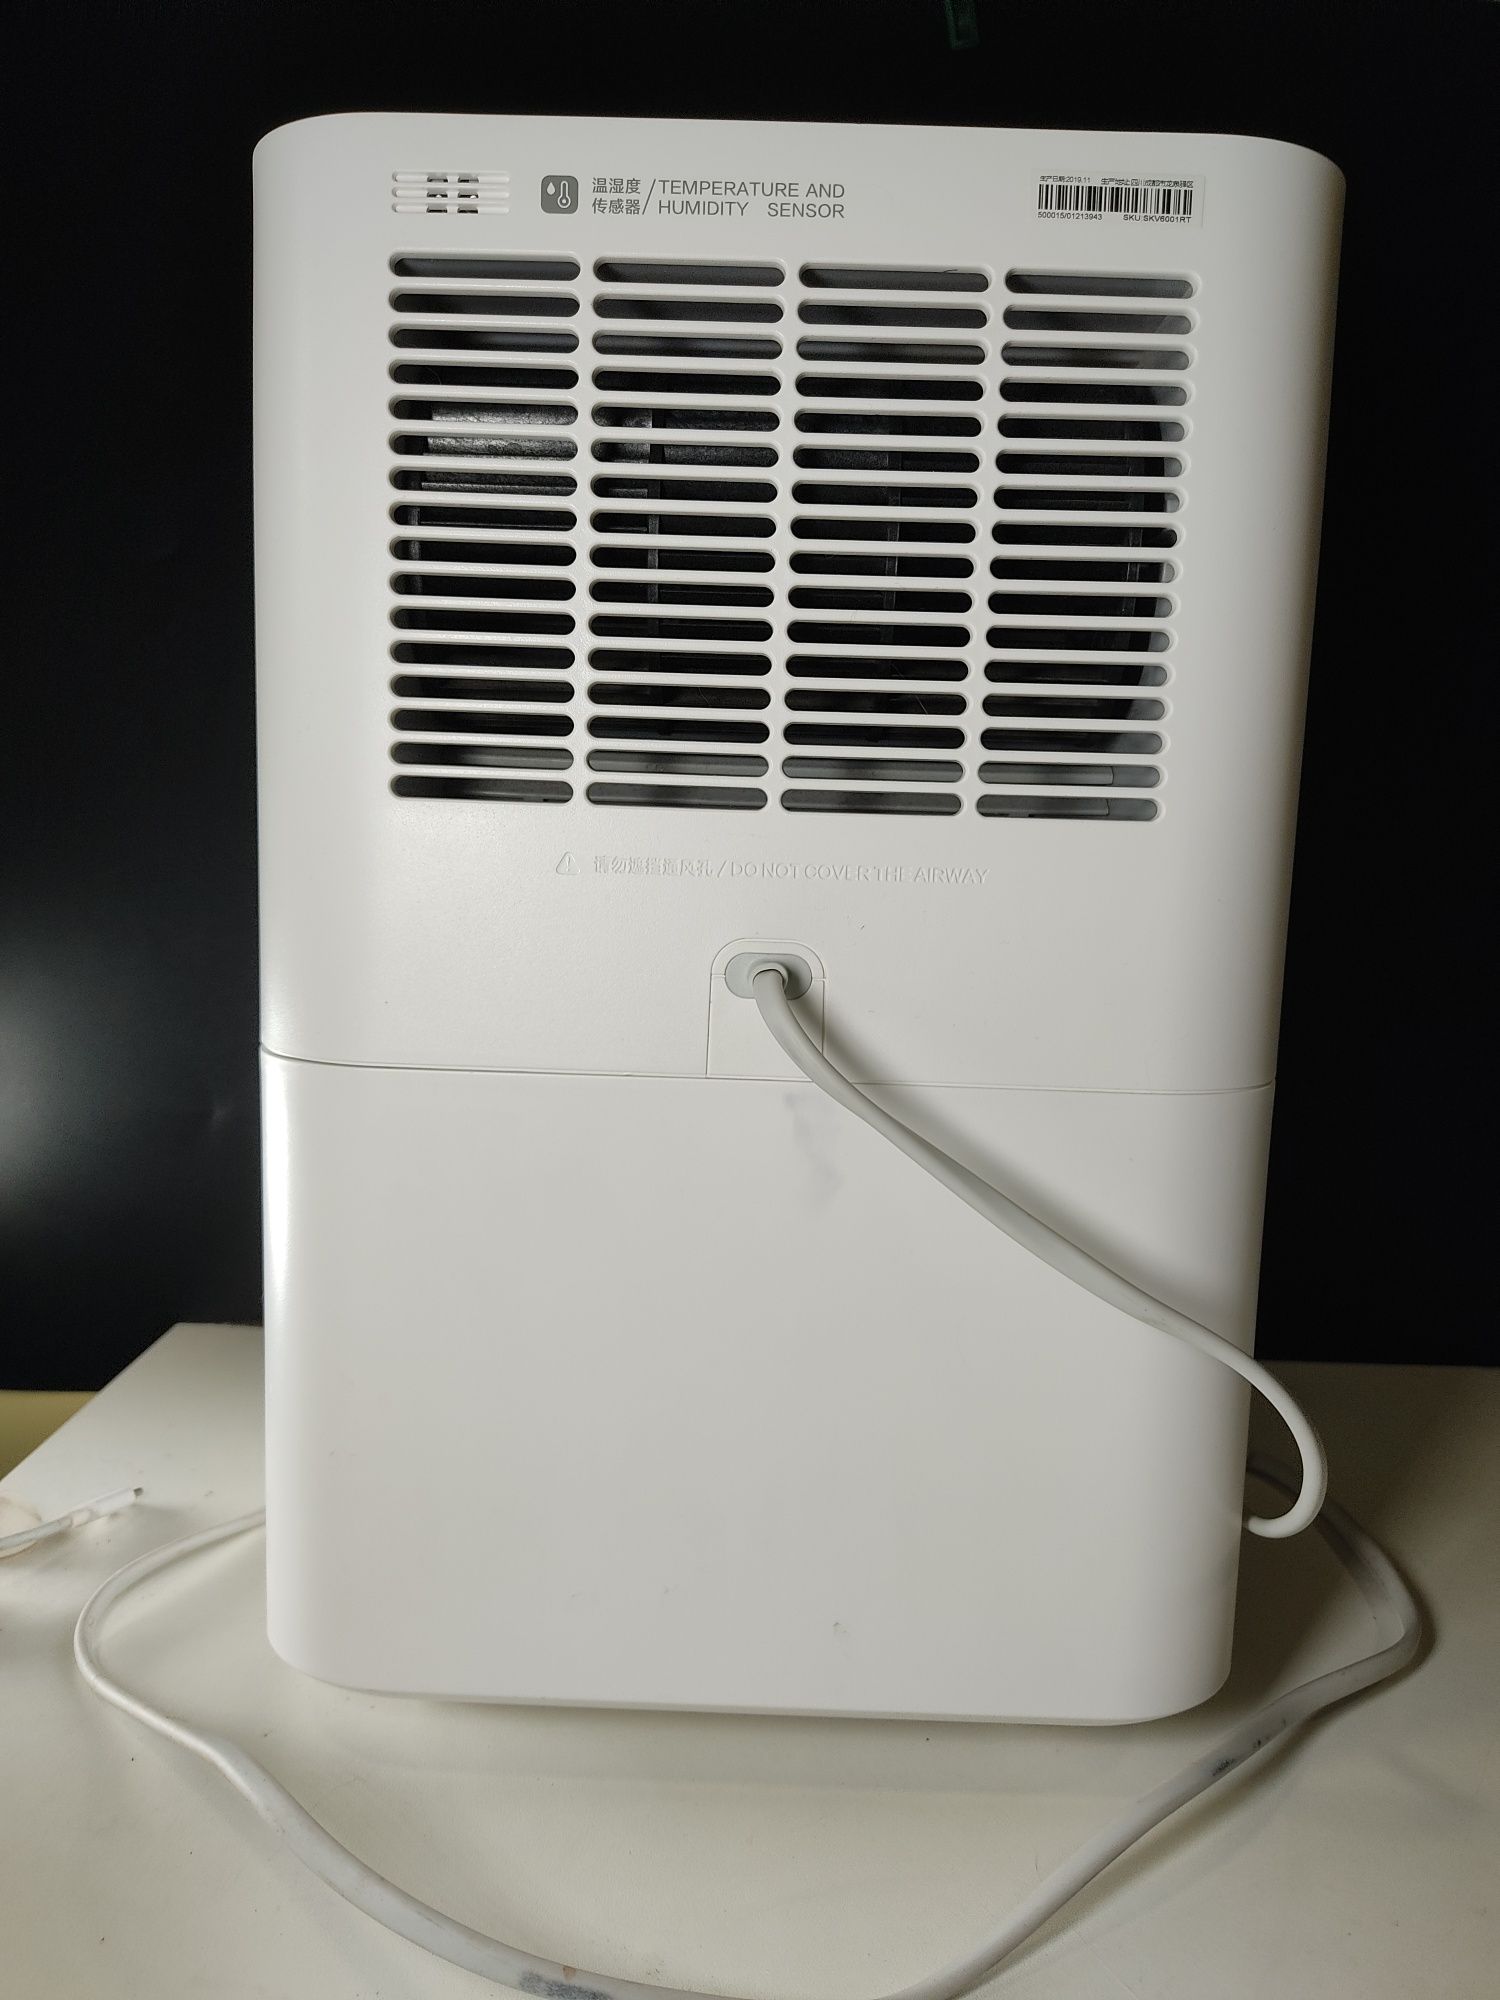 Smartmi Humidifier зволожувач повітря.